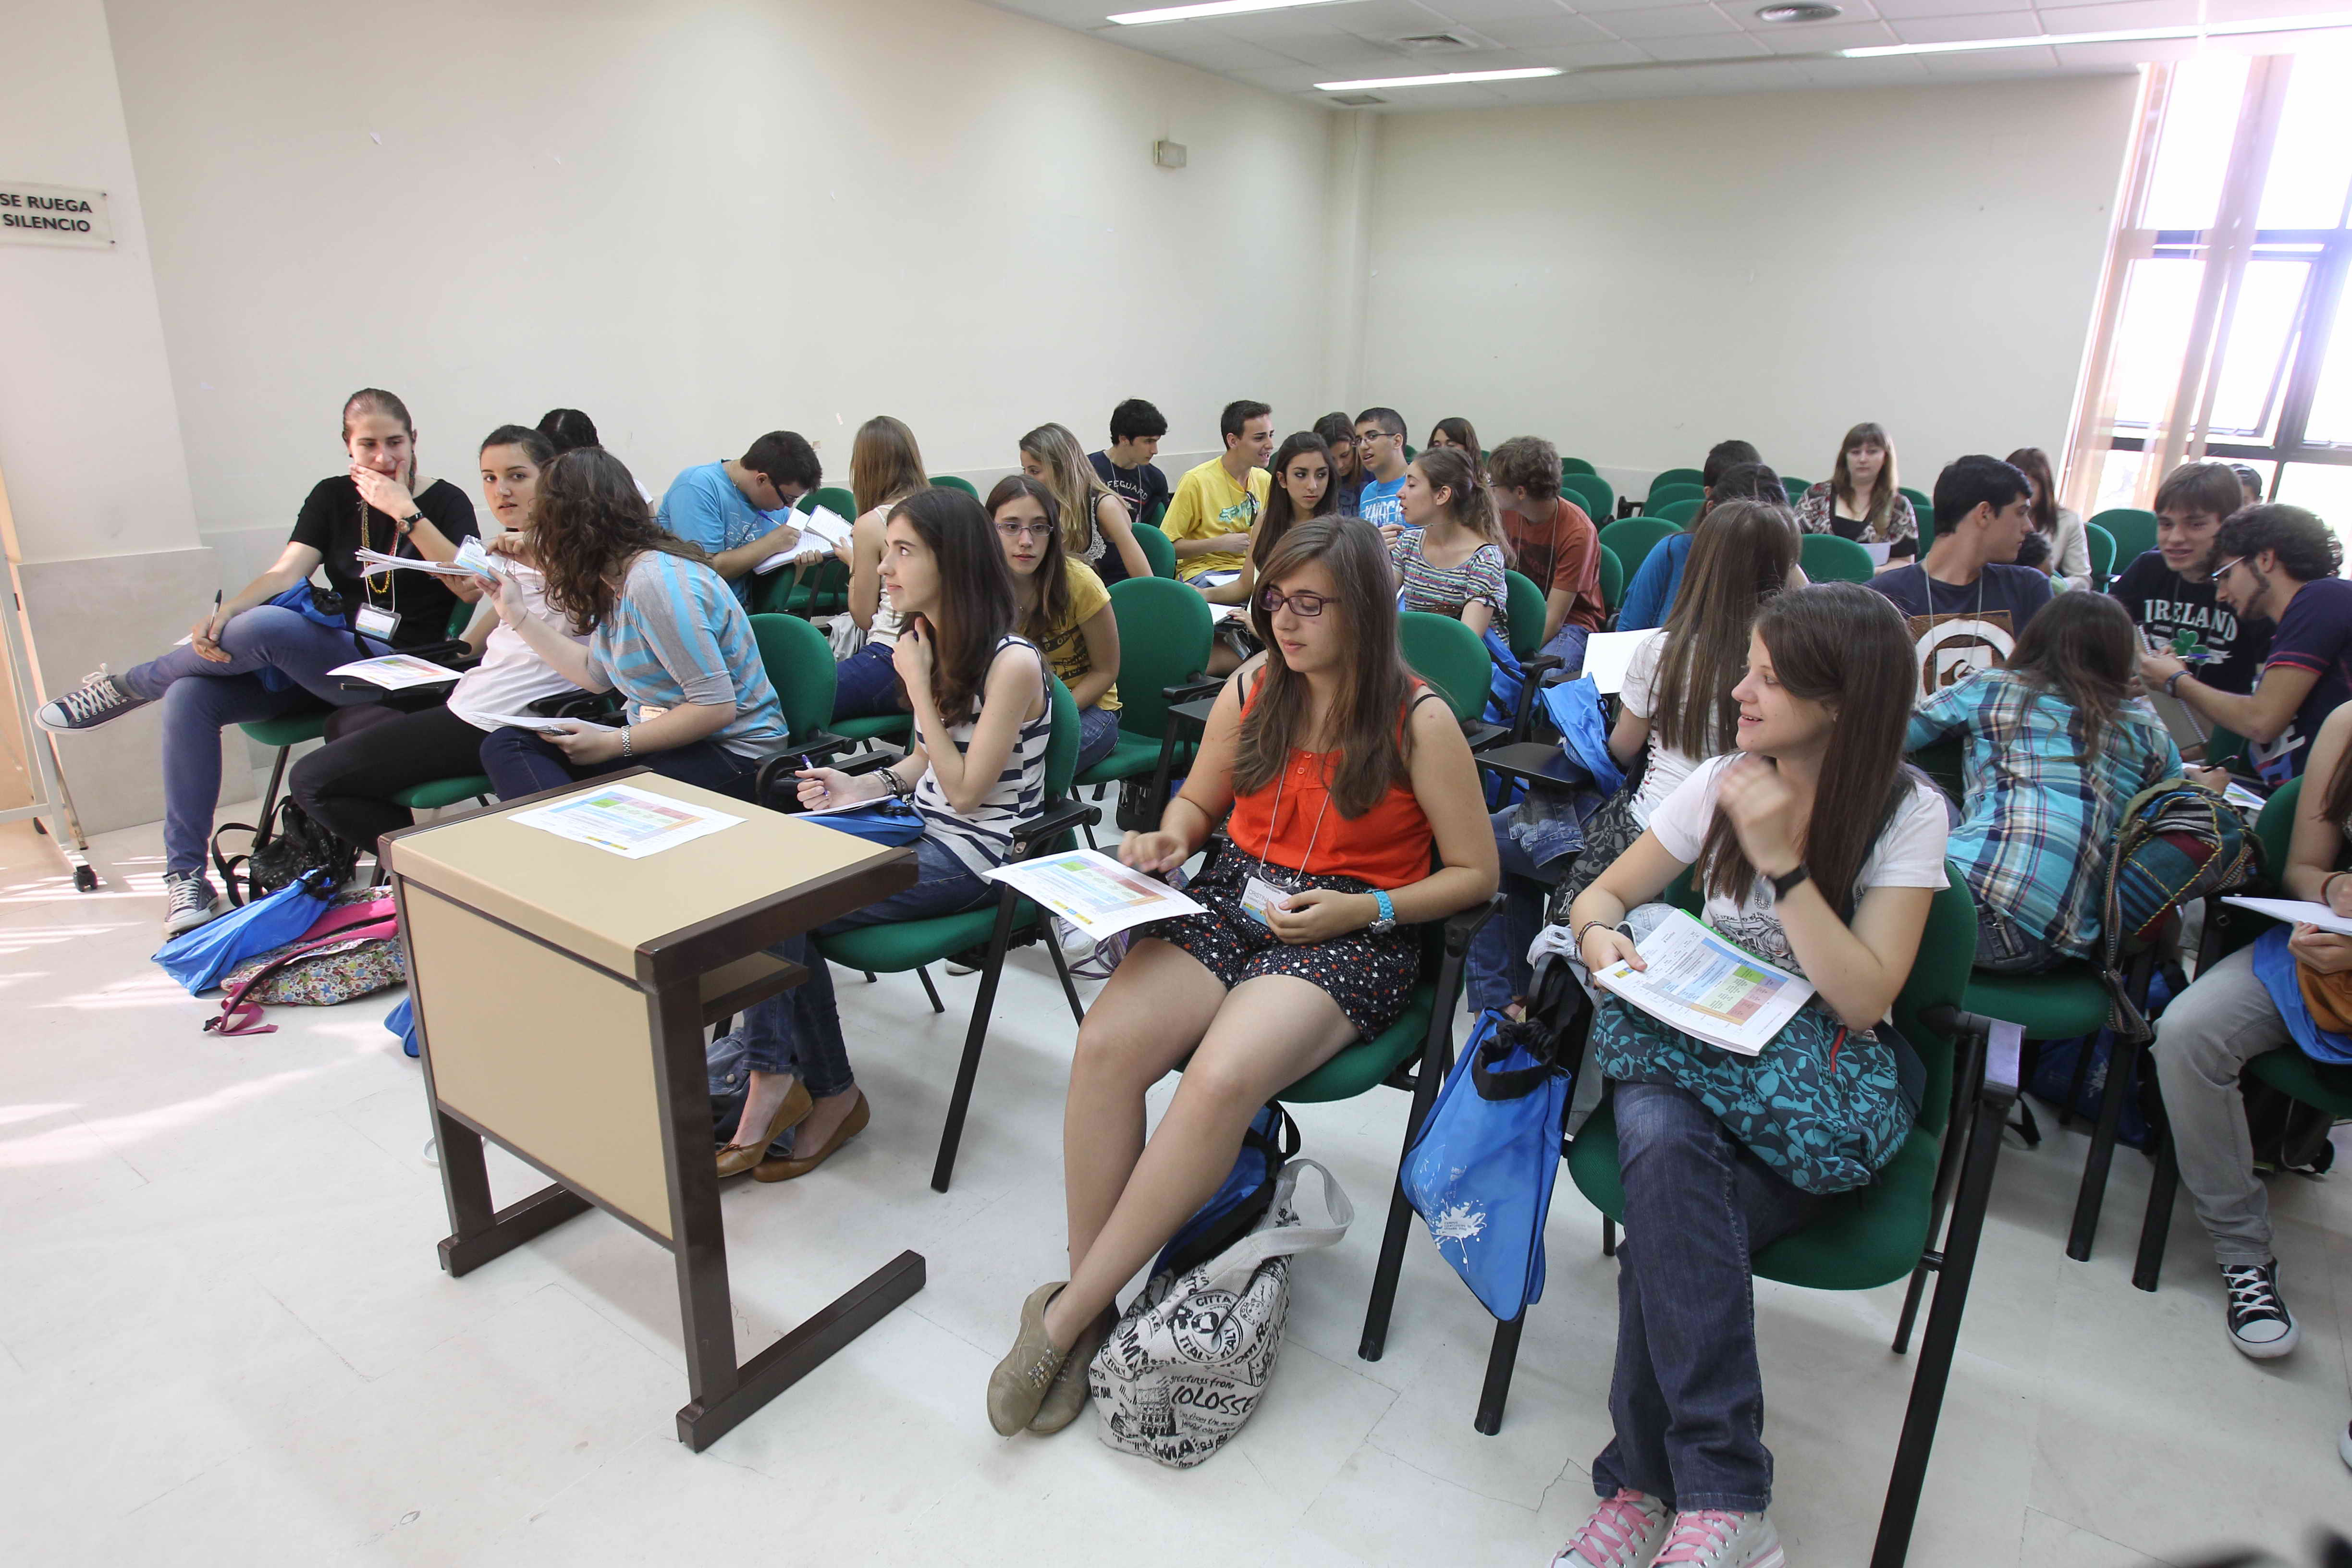 Más de 120 alumnos participan en los Campus científicos de Verano 2012 de la Universidad de Salamanca 